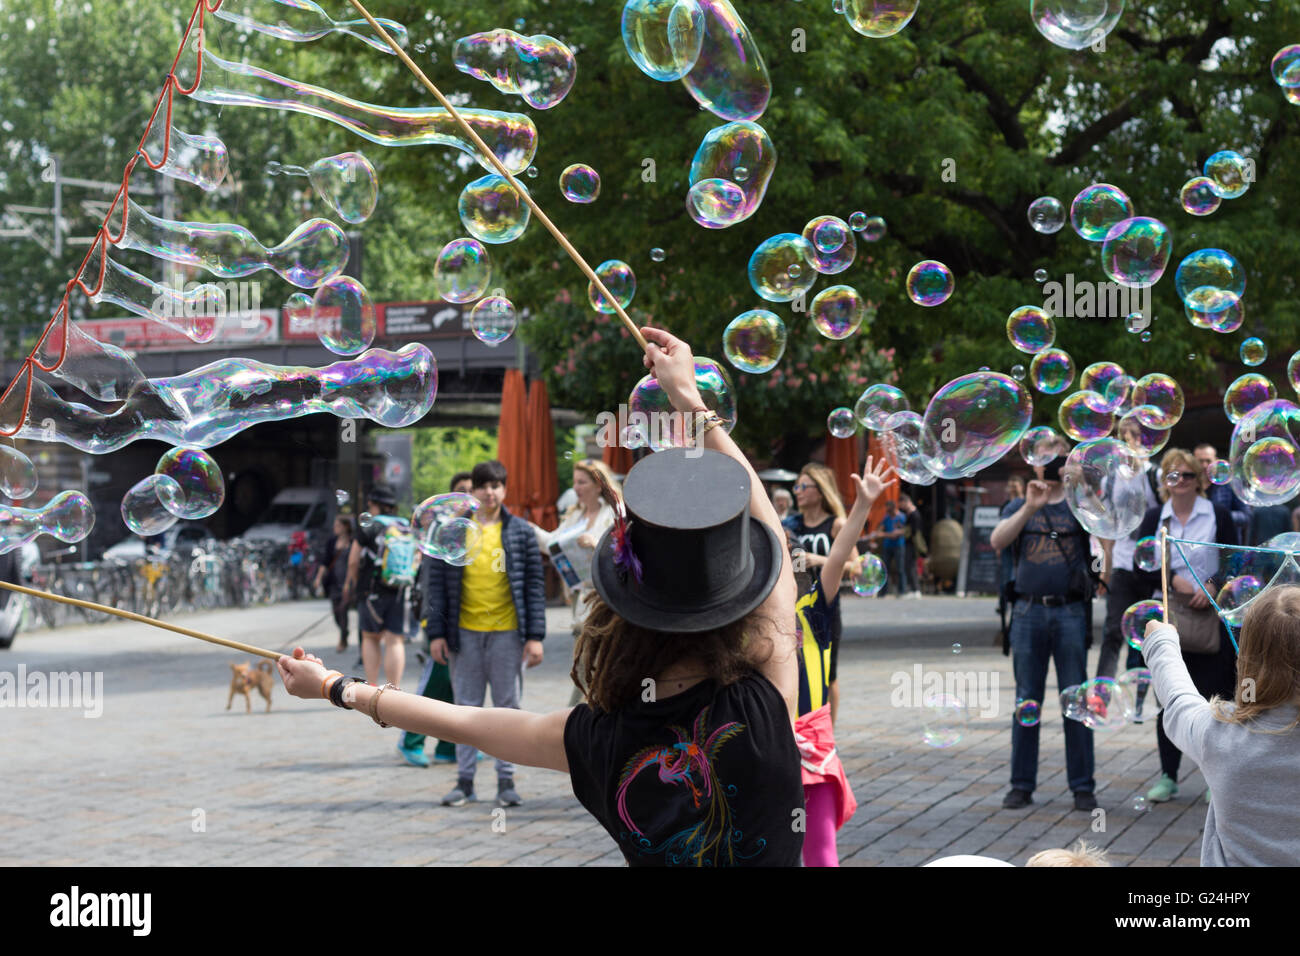 Street artist making soap bubbles on the street in Berlin, Germany. Stock Photo